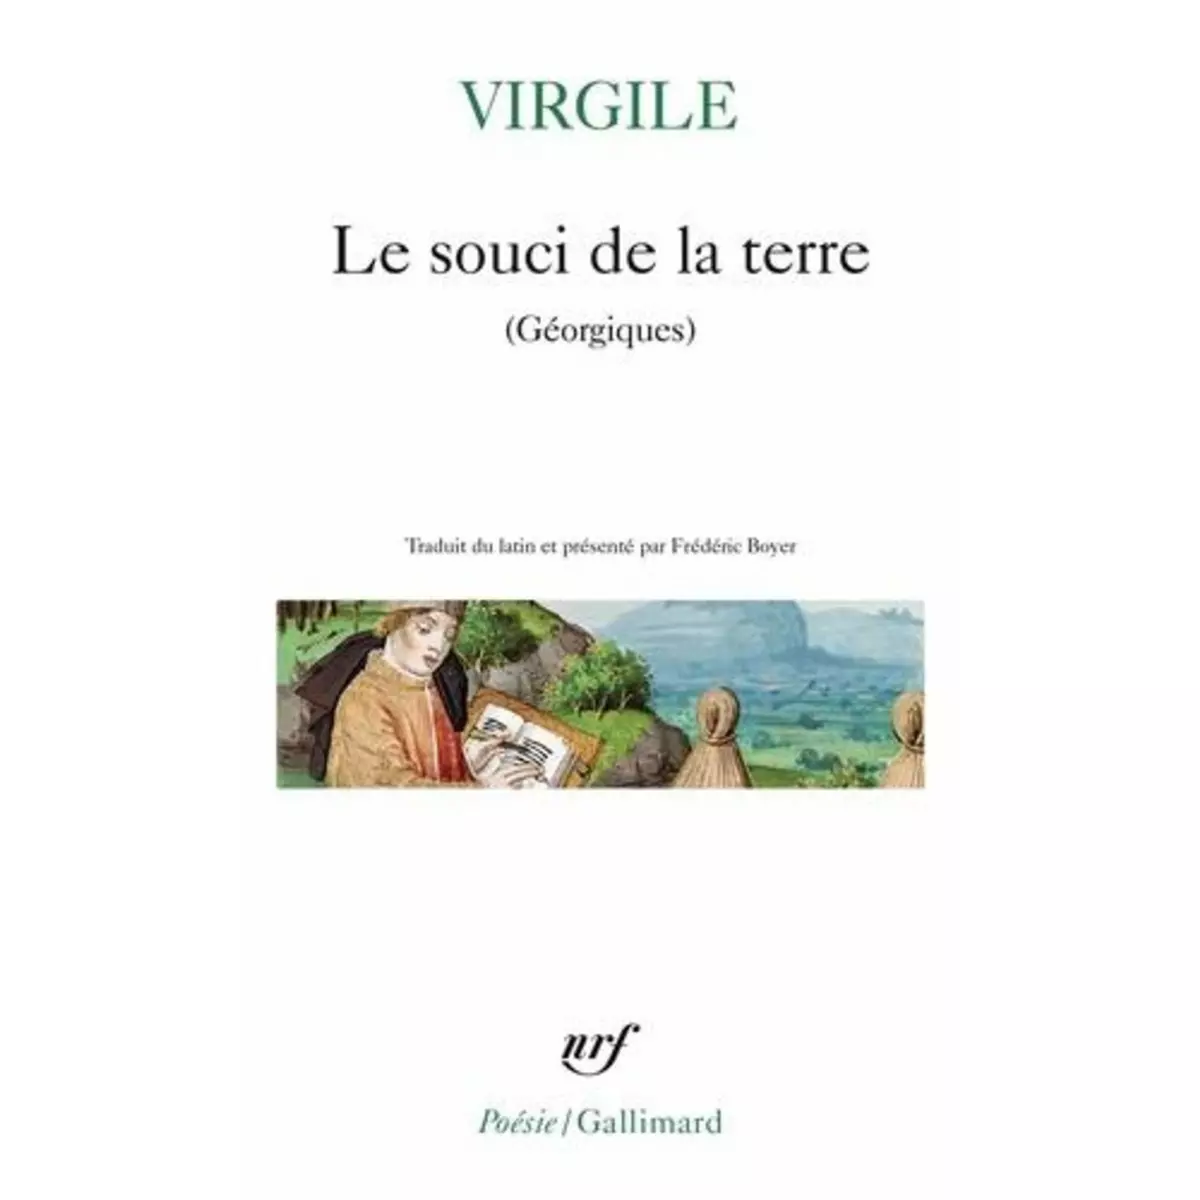  LE SOUCI DE LA TERRE. (GEORGIQUES), Virgile